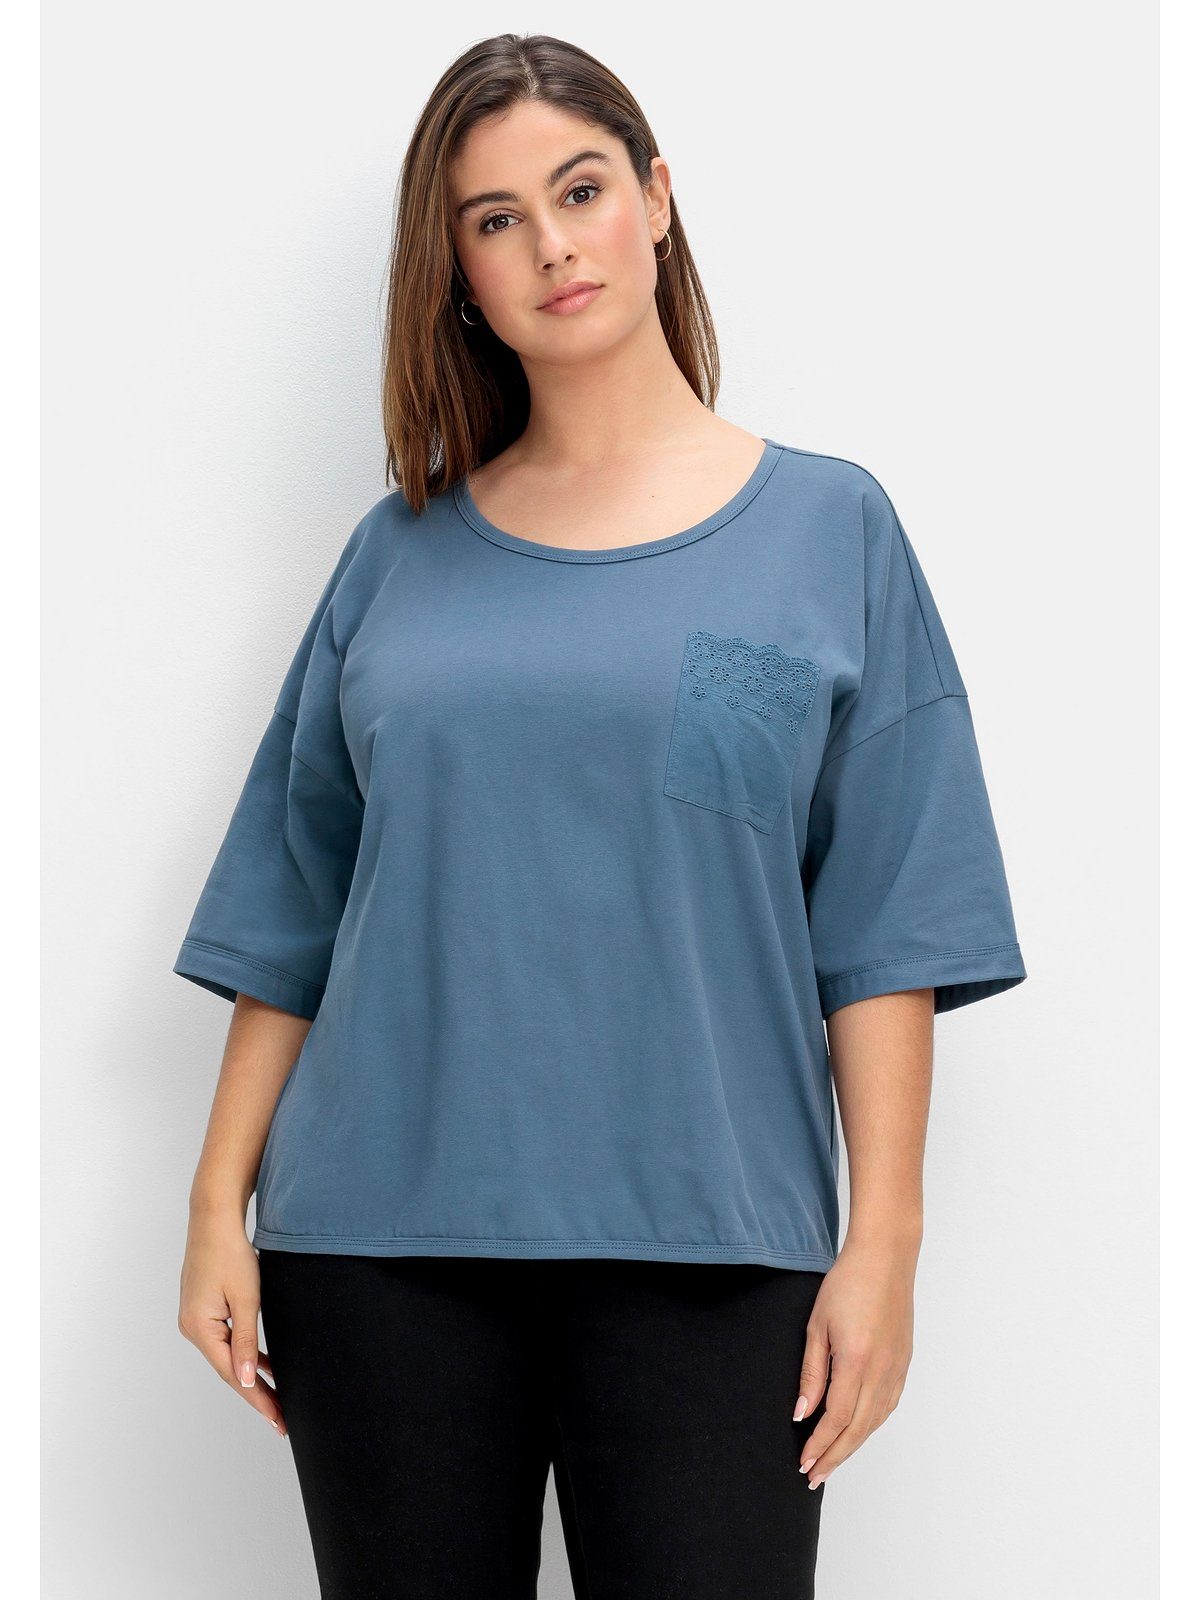 Sheego T-Shirt Große Größen mit Brusttasche taubenblau Spitze aus